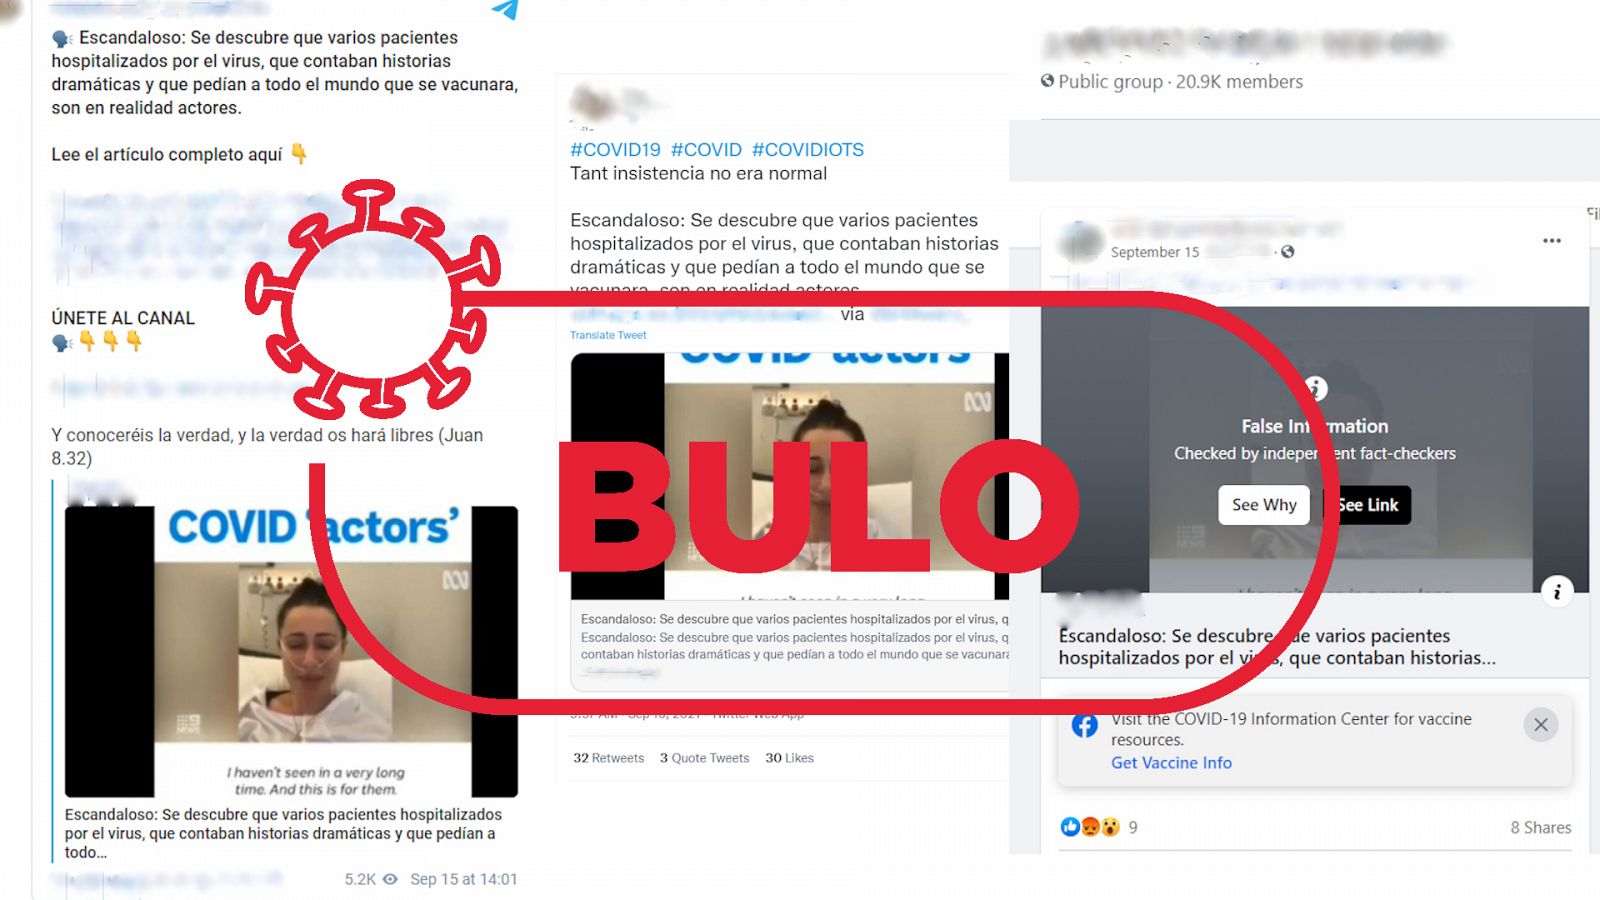 Mensajes de Telegram, Twitter y Facebook que reproducen el bulo de que tres pacientes de coronavirus en Australia son actores, con el sello bulo en rojo de VerificaRTVE